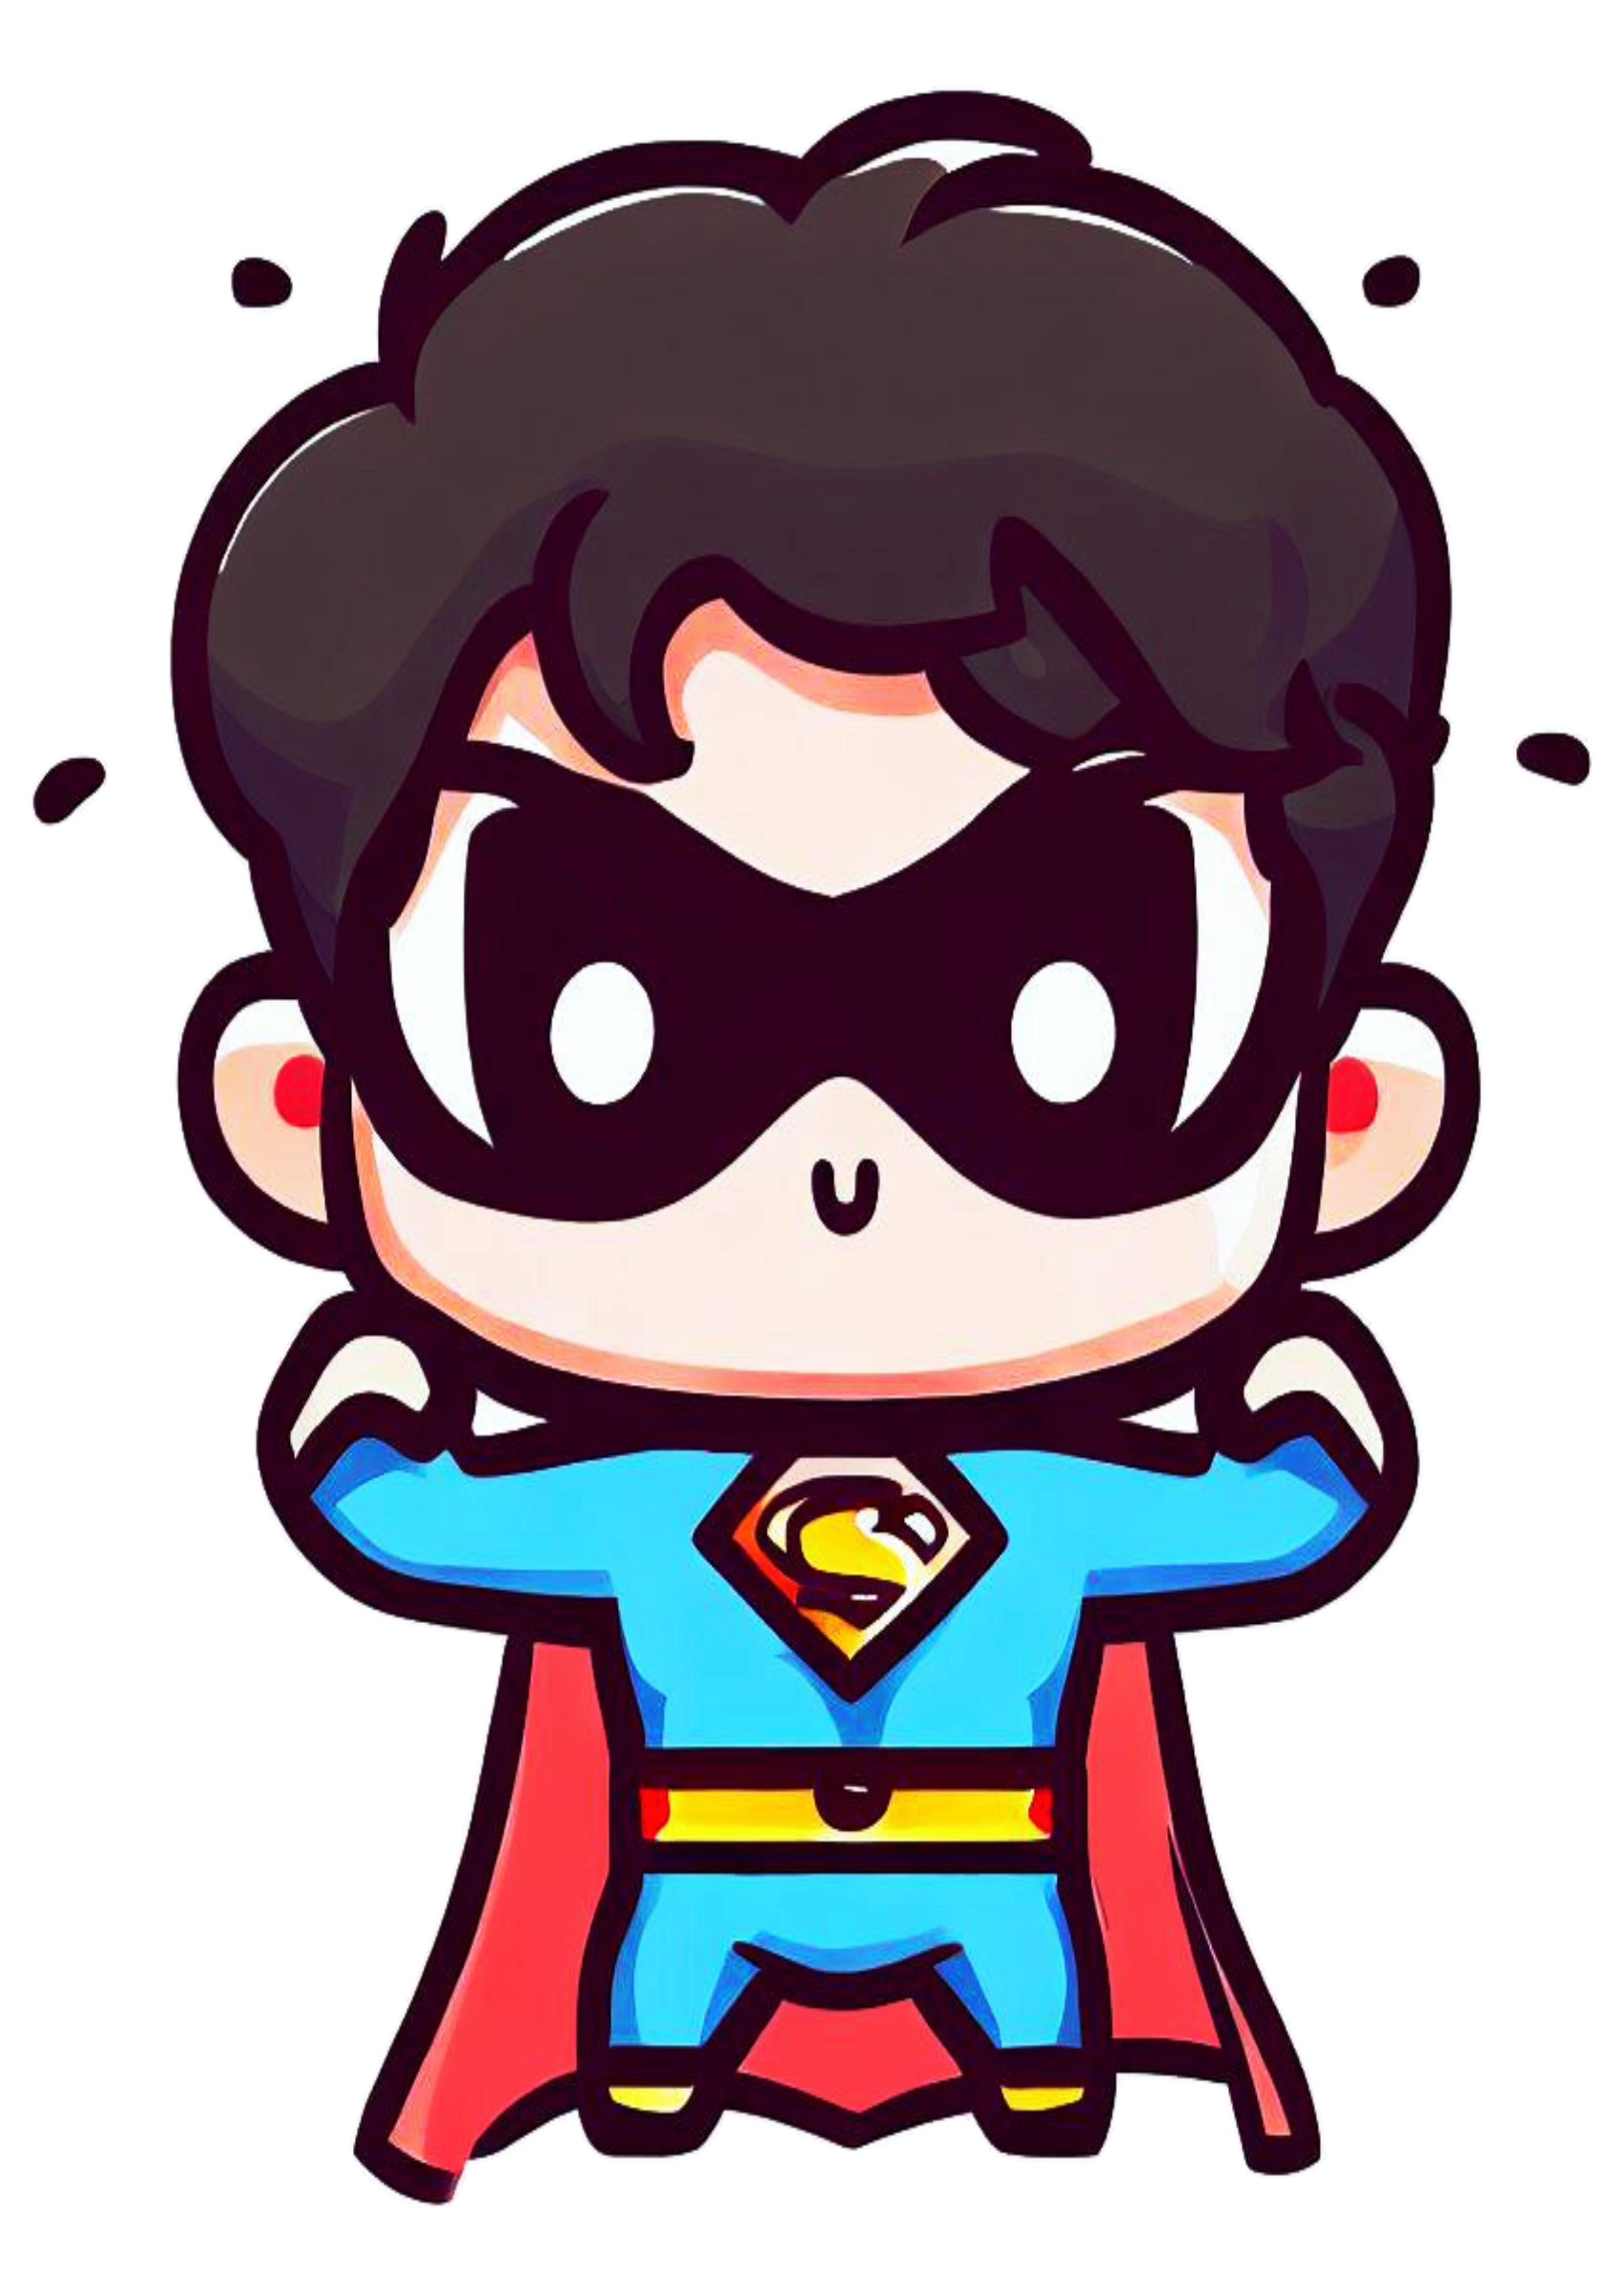 Super homem baby fofinho cute superman heroi fantasia infantil png